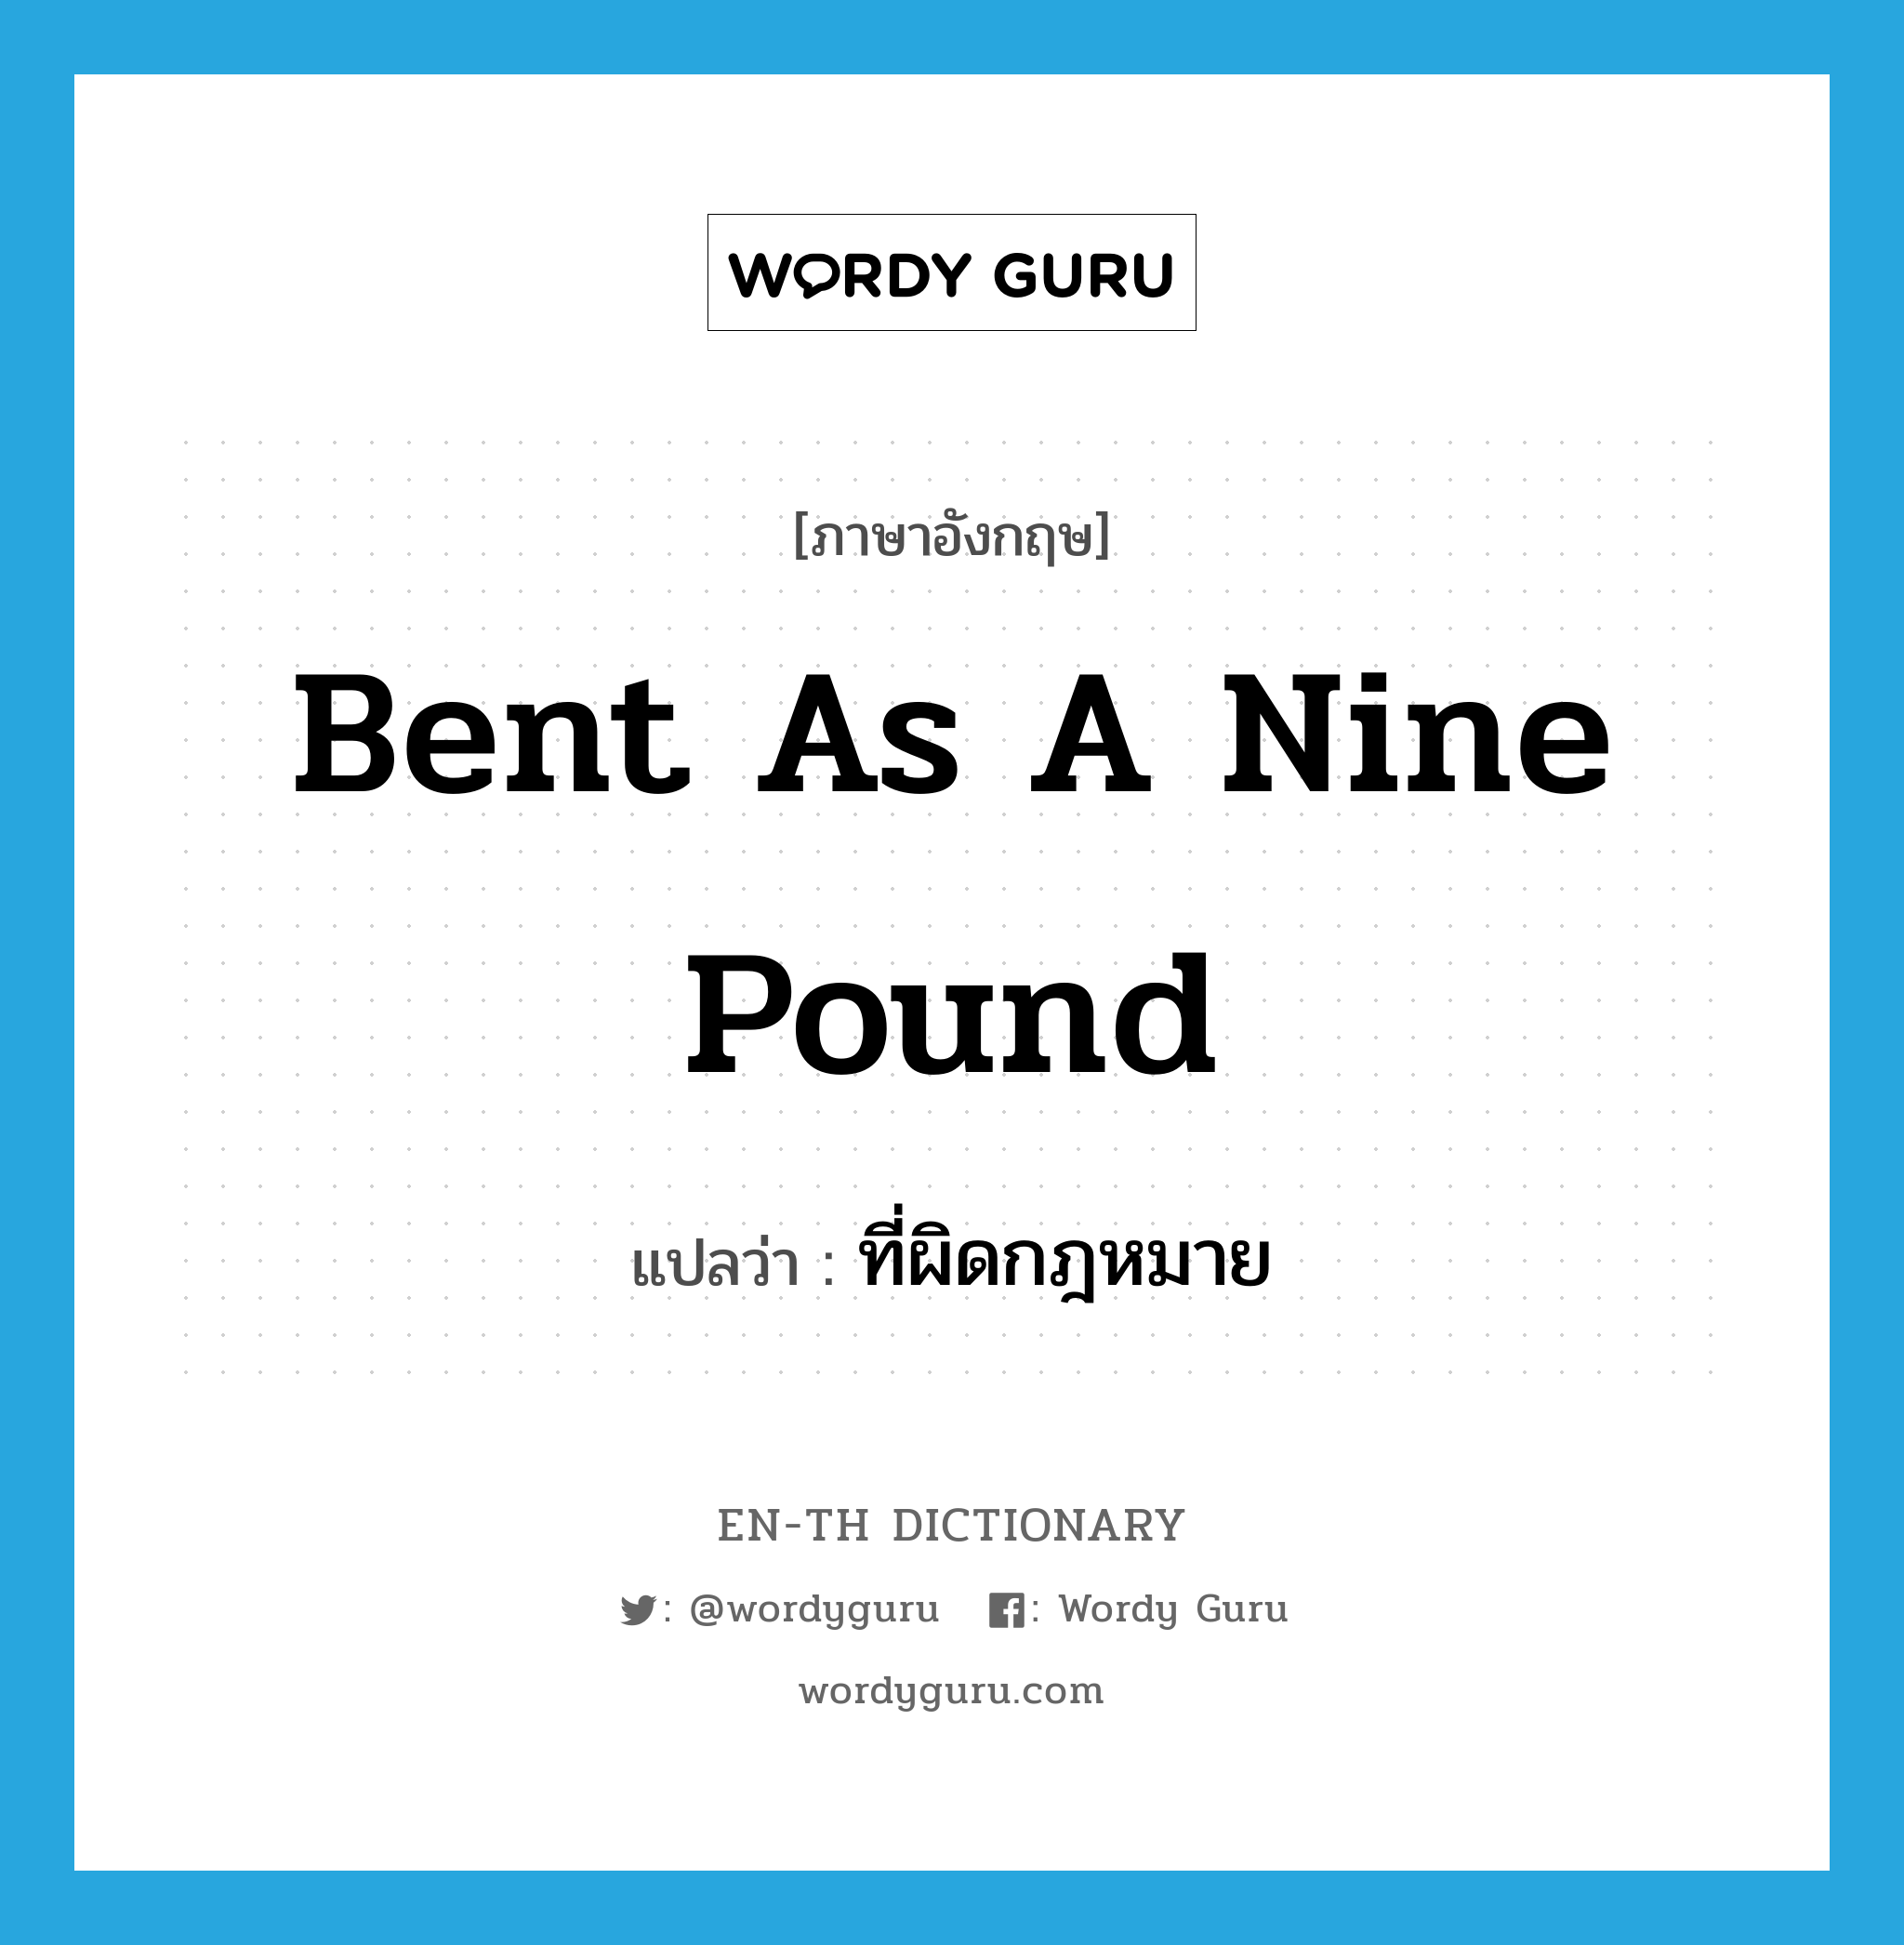 ที่ผิดกฎหมาย ภาษาอังกฤษ?, คำศัพท์ภาษาอังกฤษ ที่ผิดกฎหมาย แปลว่า bent as a nine pound ประเภท SL หมวด SL